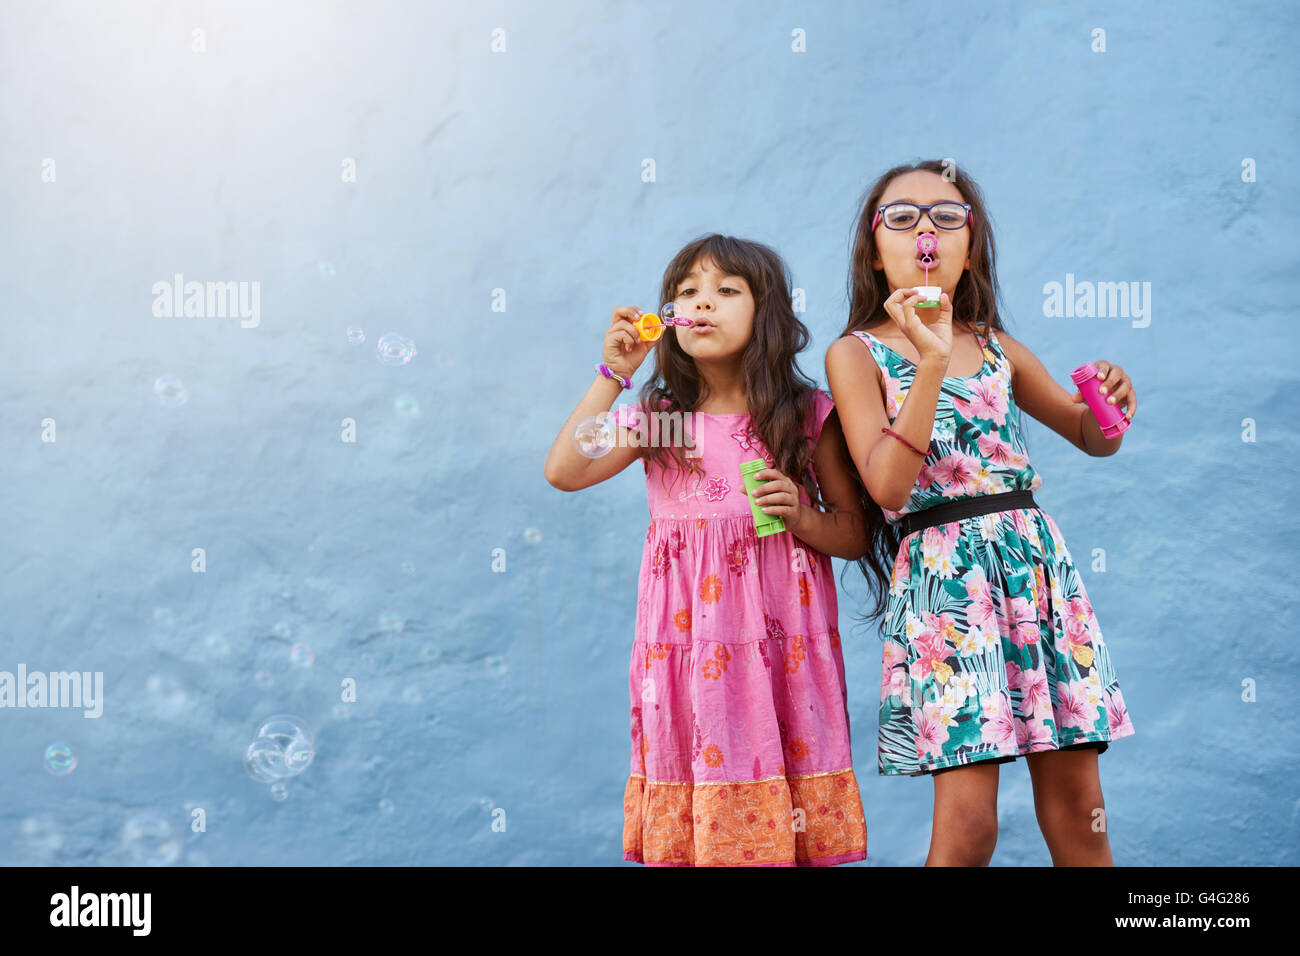 Portrait d'adorables petits filles souffler des bulles de savon contre le mur bleu. Deux jeunes filles jouant ensemble. Banque D'Images